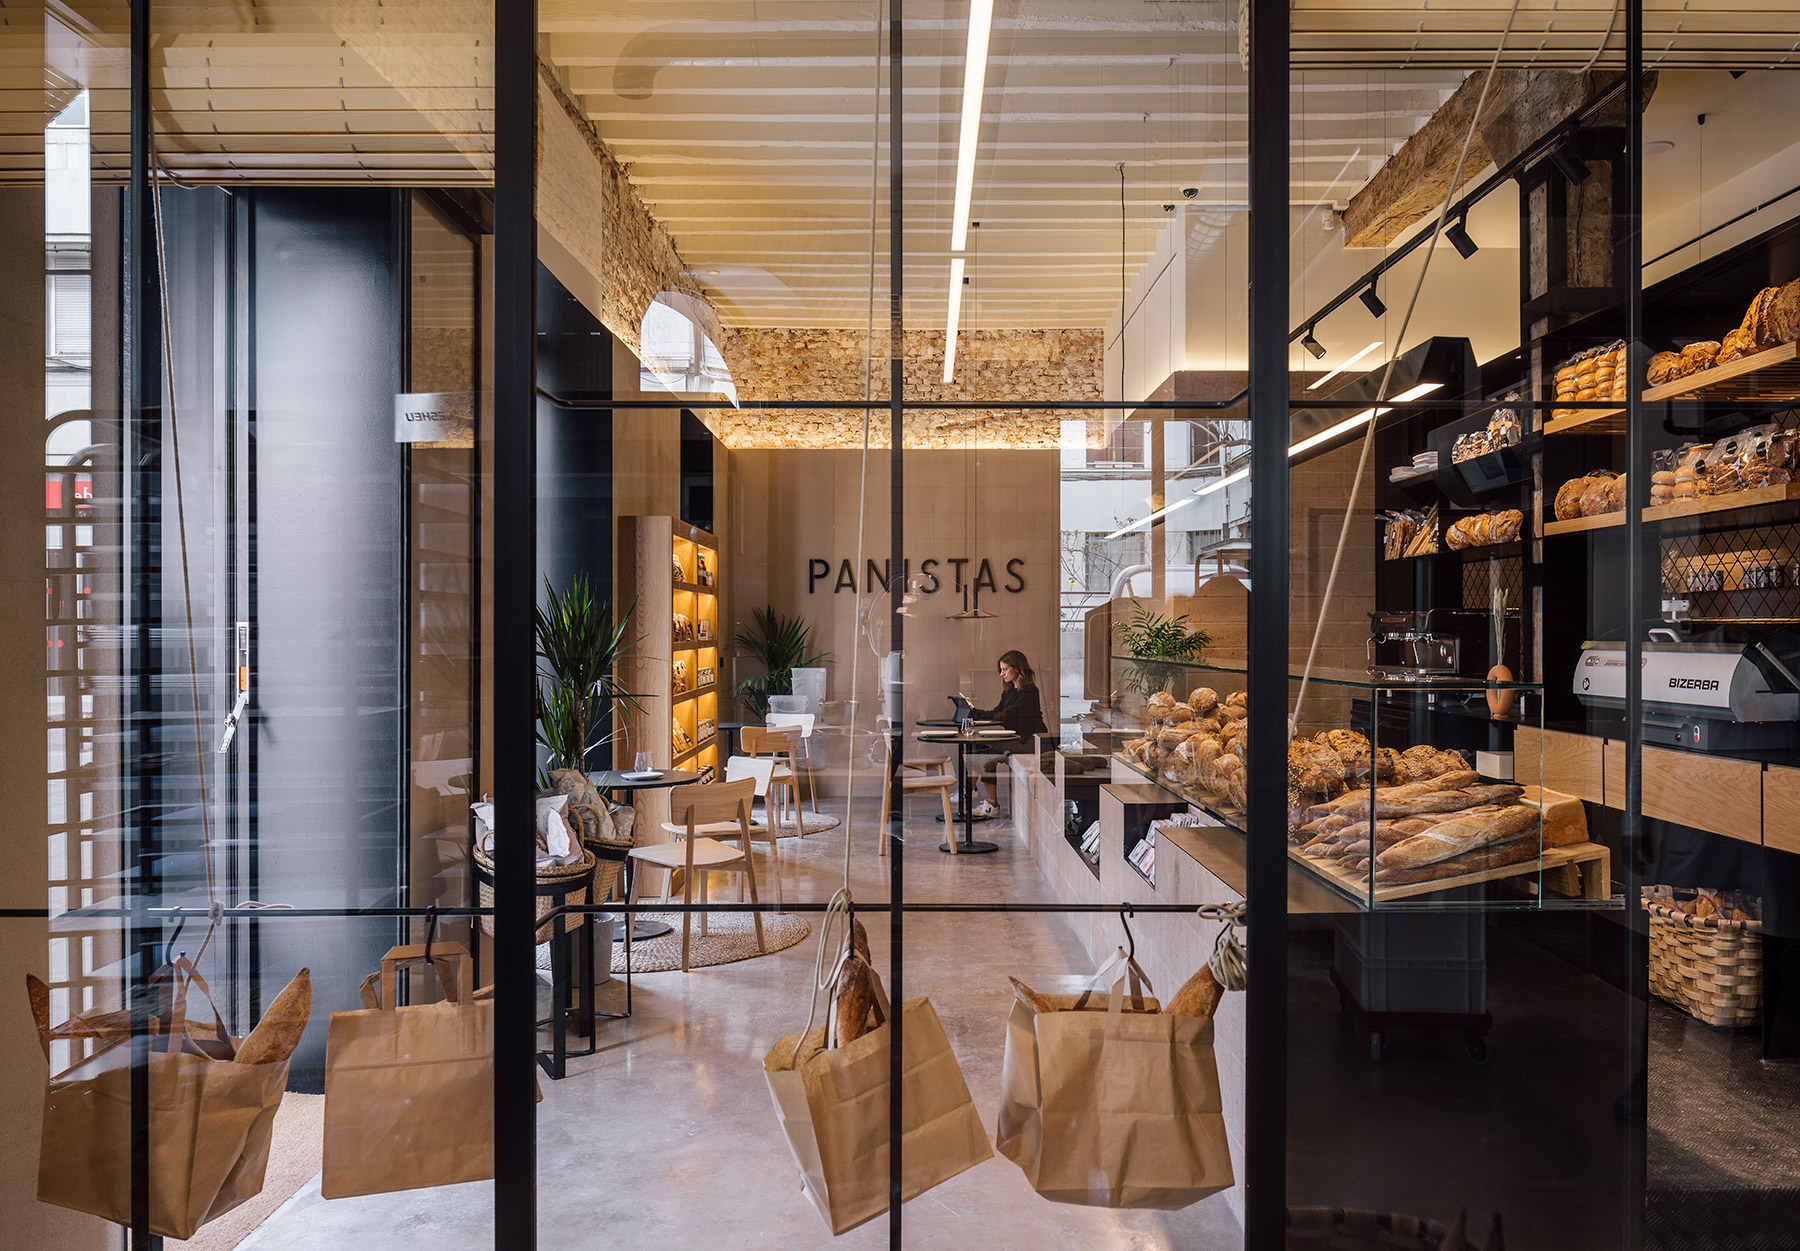 Zooco desarrolla el proyecto de interiorismo y decoración de una panadería en Santander diferente a las demás, tanto en producto como en estética